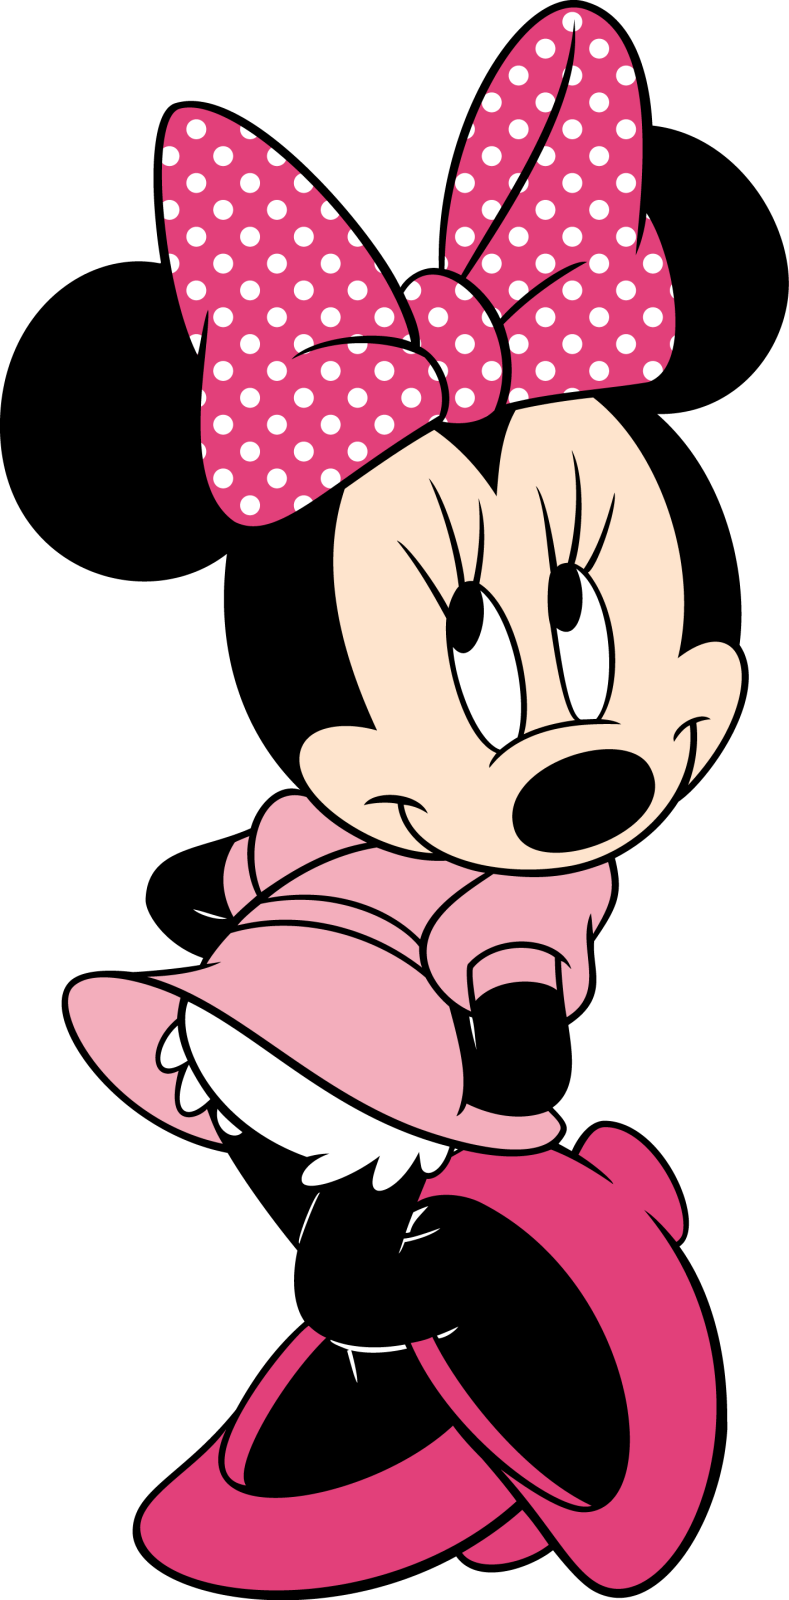 Descargar Imágenes Gratis: Minnie Mouse PNG sin fondo